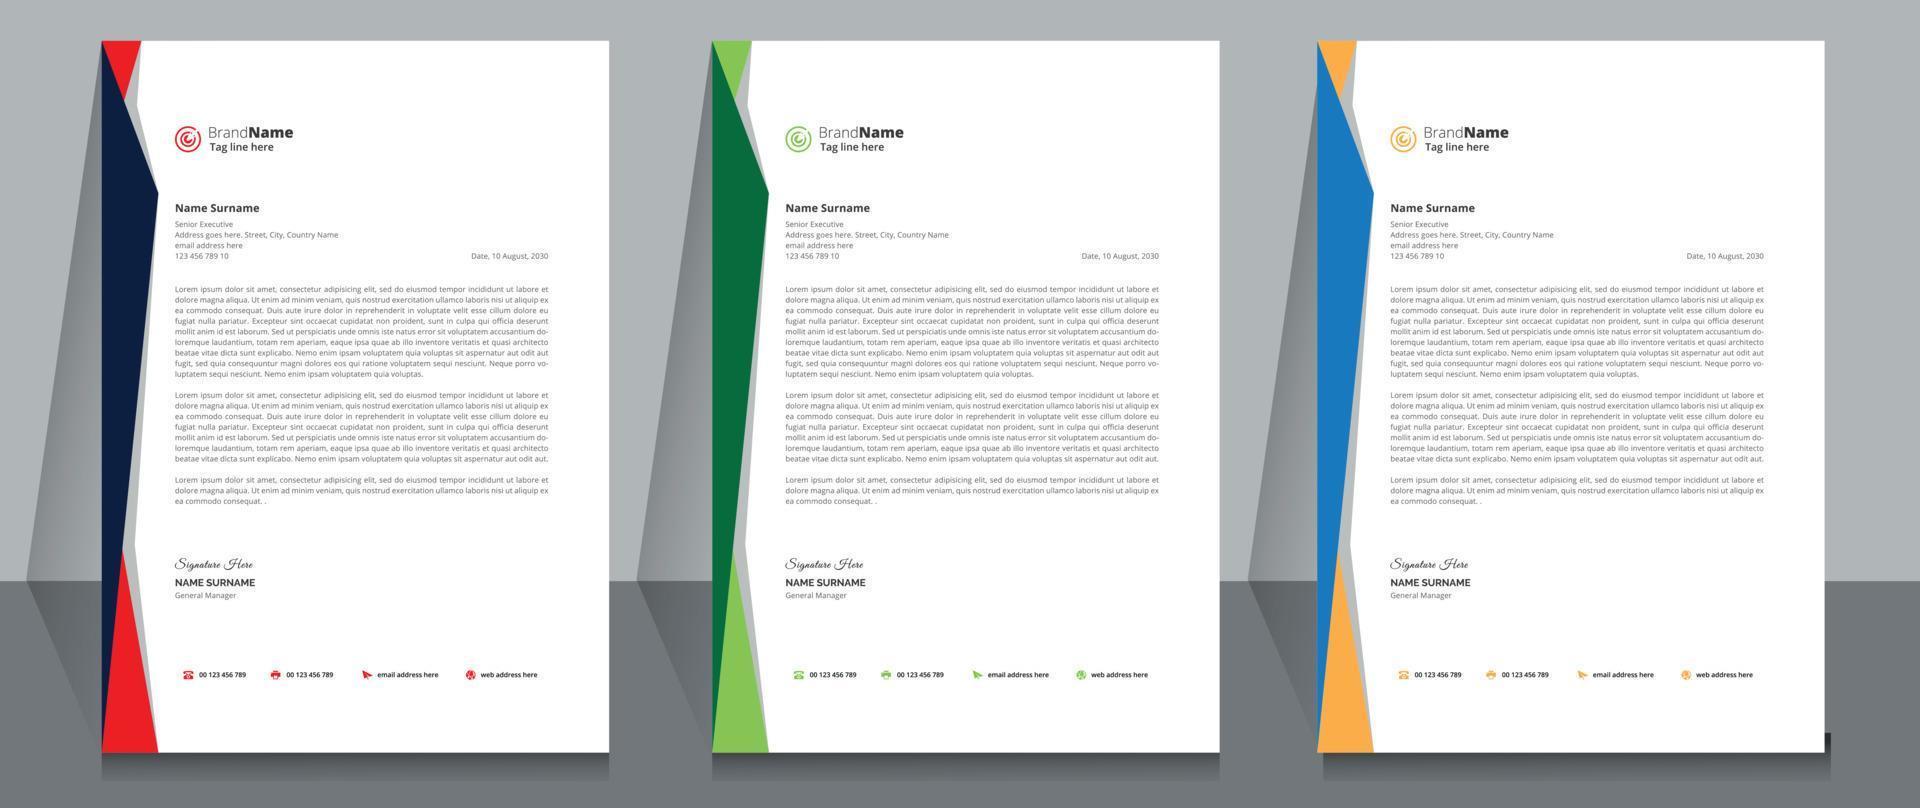 kreativa företagsföretag brevpapper malldesign. vektor